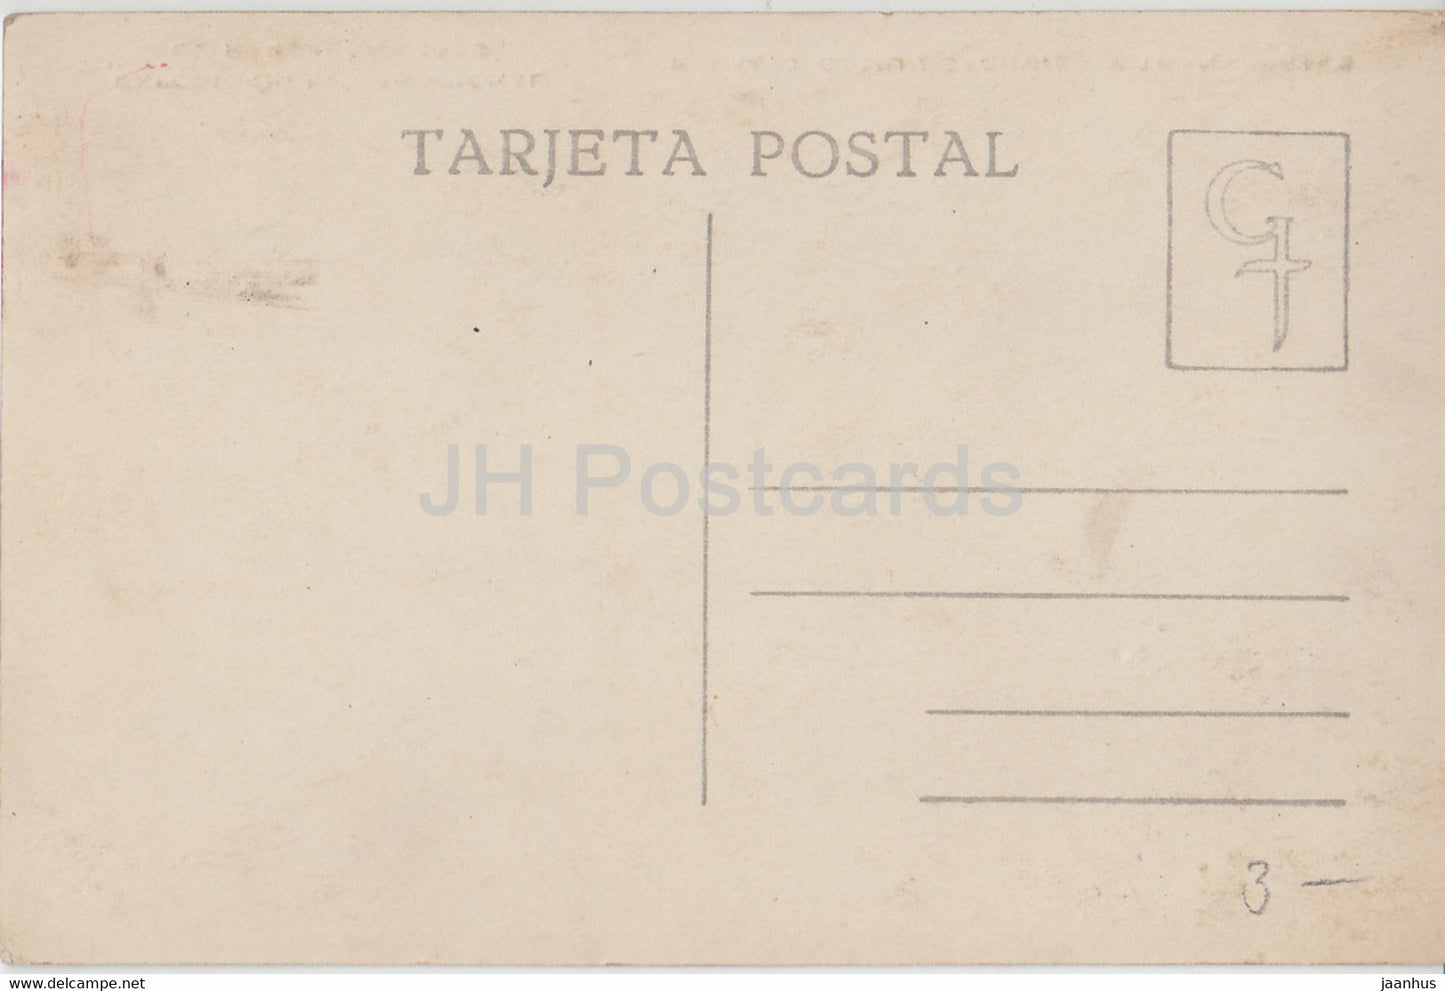 Exposicion Internacional de Barcelona 1929 – Palacio Comunicaciones y Transportes – Auto – alte Postkarte – Spanien – unbenutzt